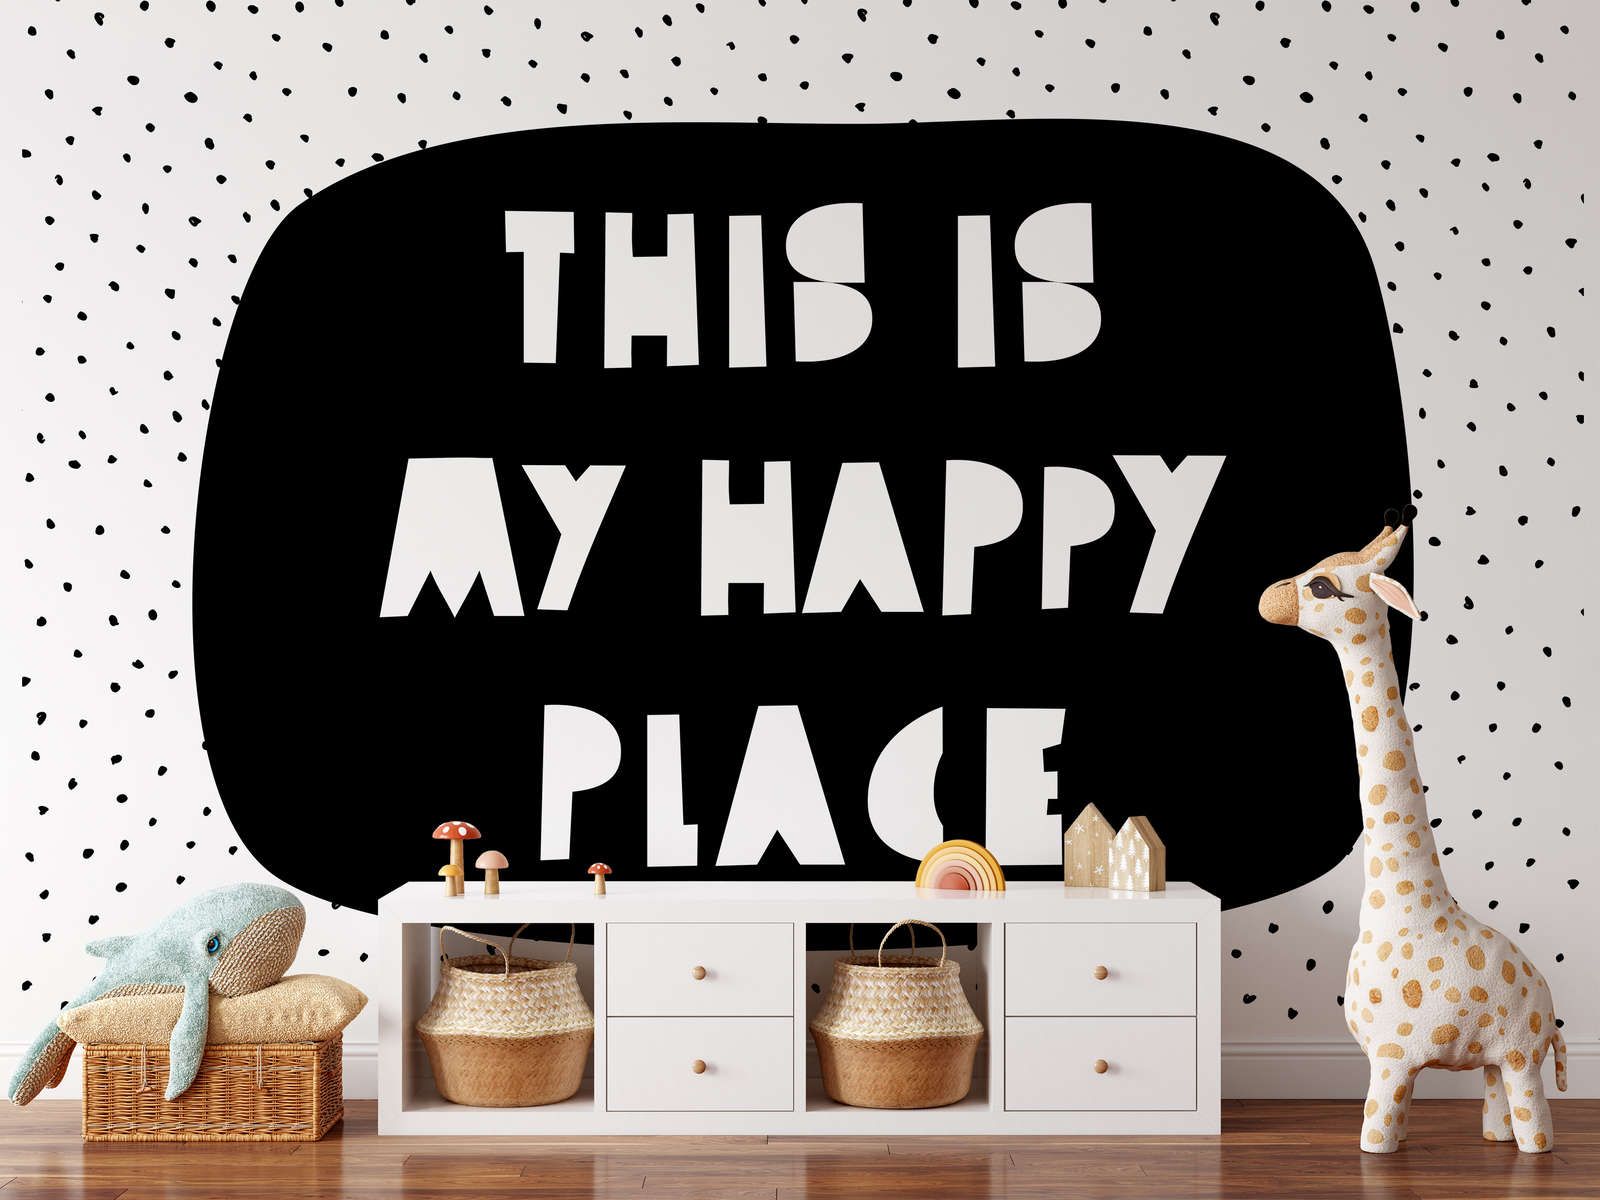             Fototapete fürs Kinderzimmer mit Schriftzug "This is my happy place" – Glattes & perlmutt-schimmerndes Vlies
        